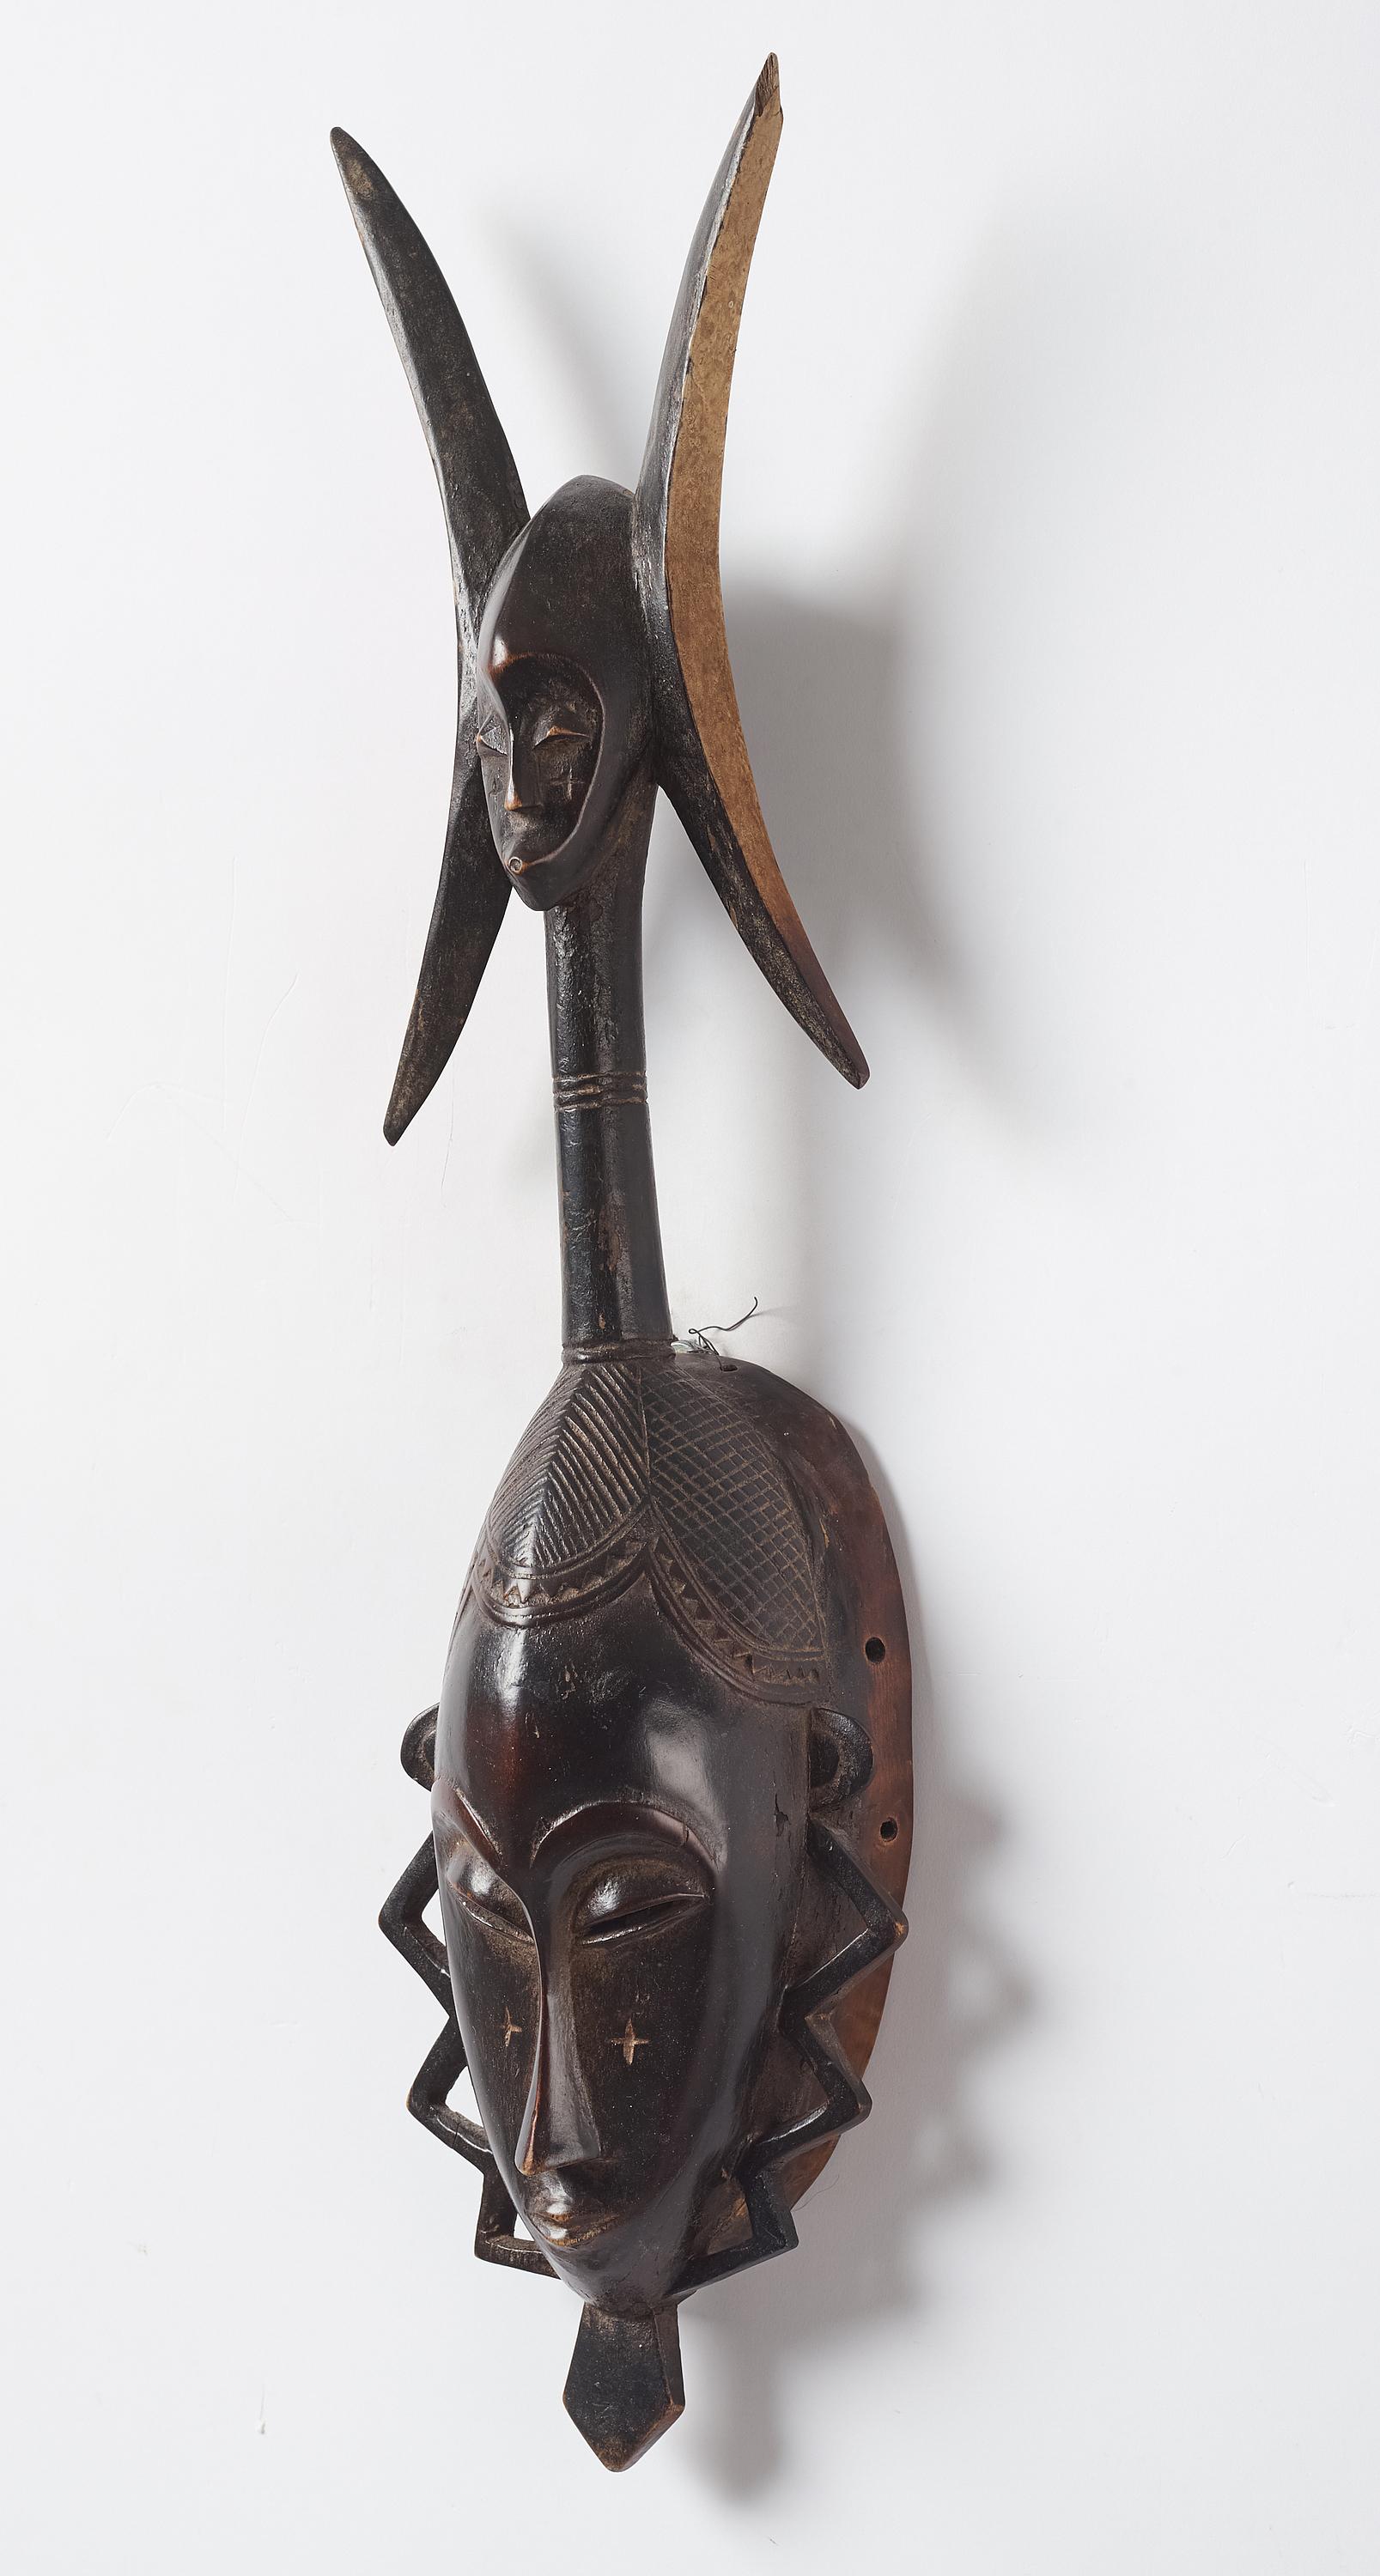 Masque africain de Yaure  tribu en Côte d'Ivoire Vers 1950. Belle patine sombre.
Collection privée suédoise, des années 1980 puis héritée au sein de la famille.
L'art de la tribu Yaure est réputé pour sa délicatesse et son raffinement. Ce superbe